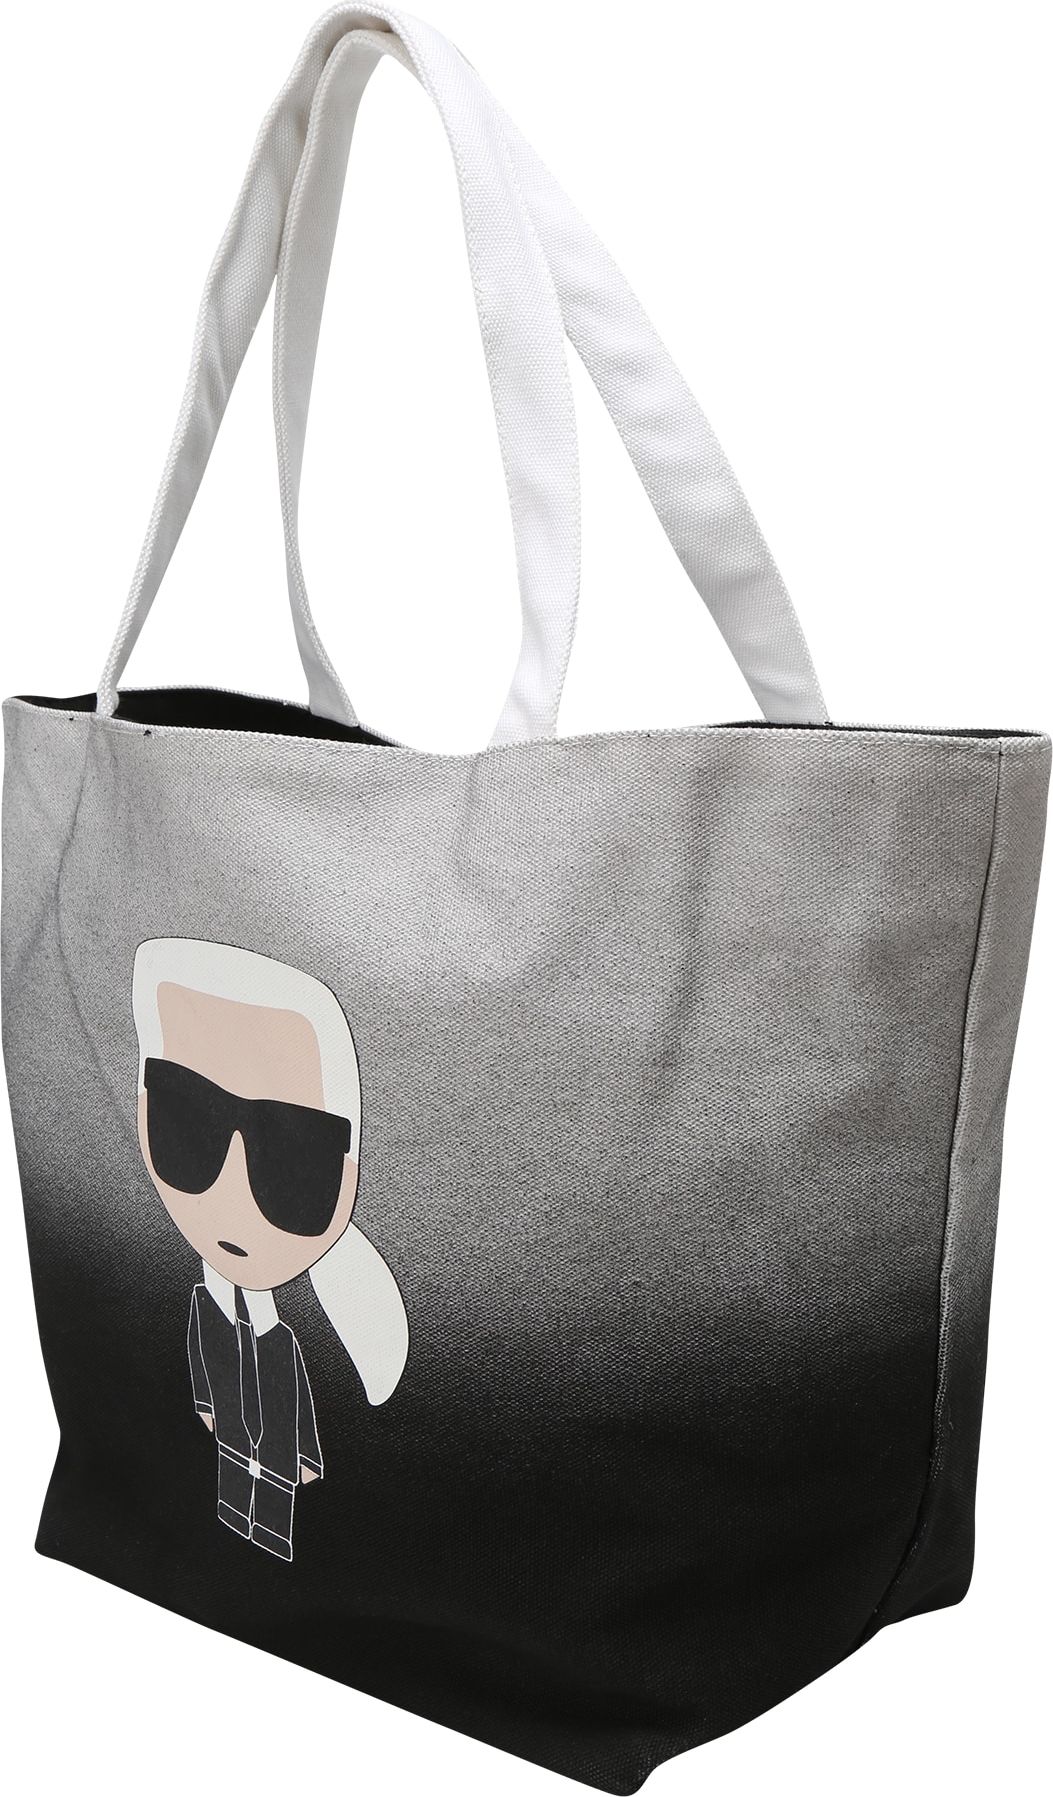 Karl Lagerfeld Nákupní taška 'Ikonik' tělová / šedá / černá / bílá